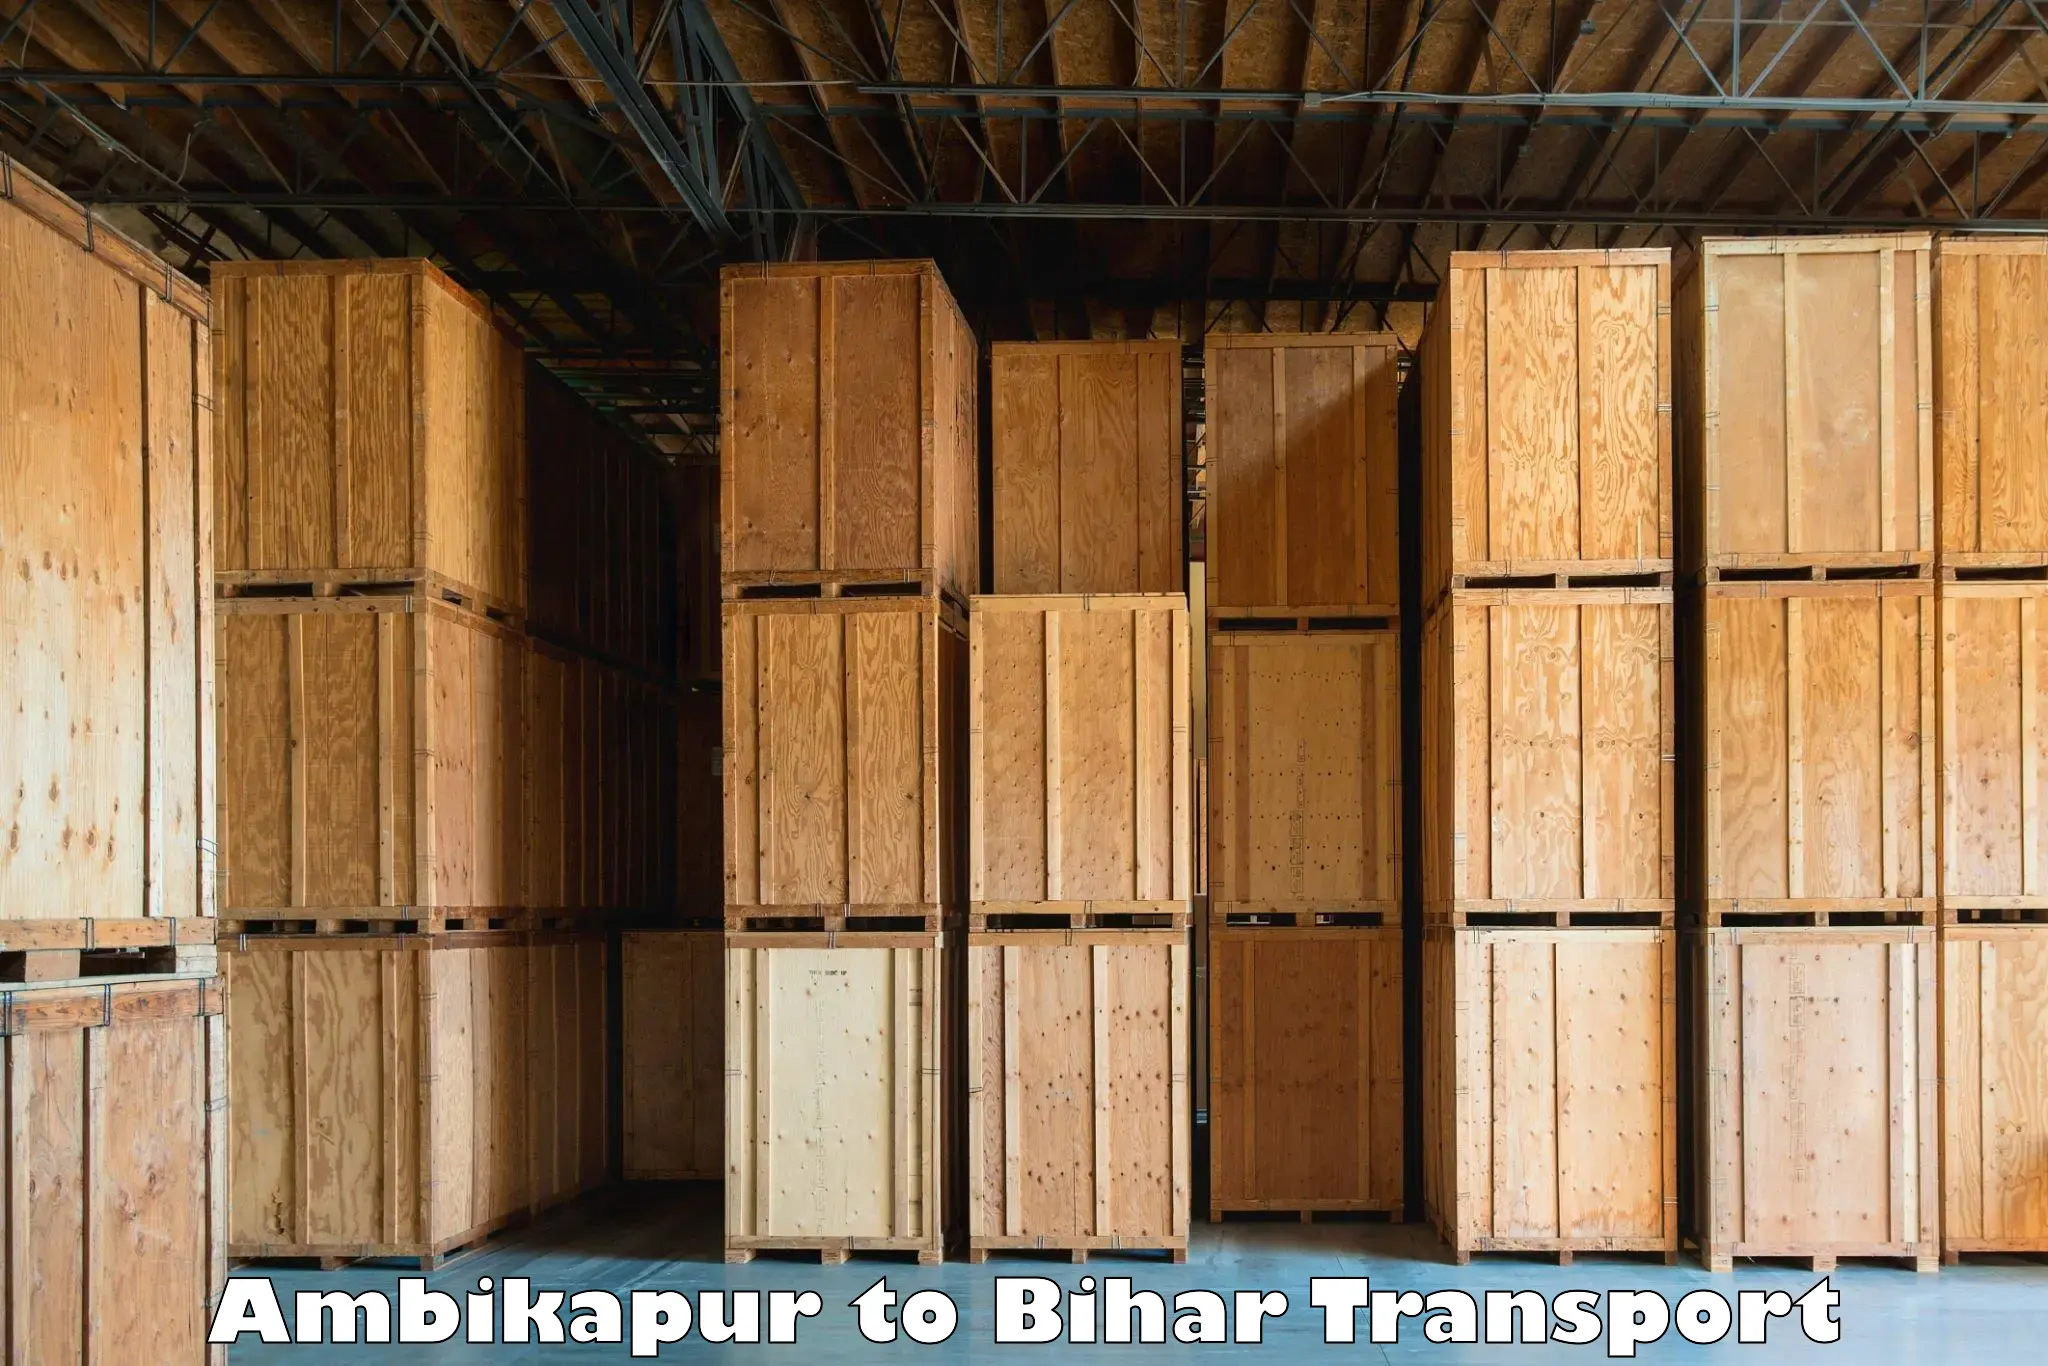 Furniture transport service Ambikapur to Kishunganj